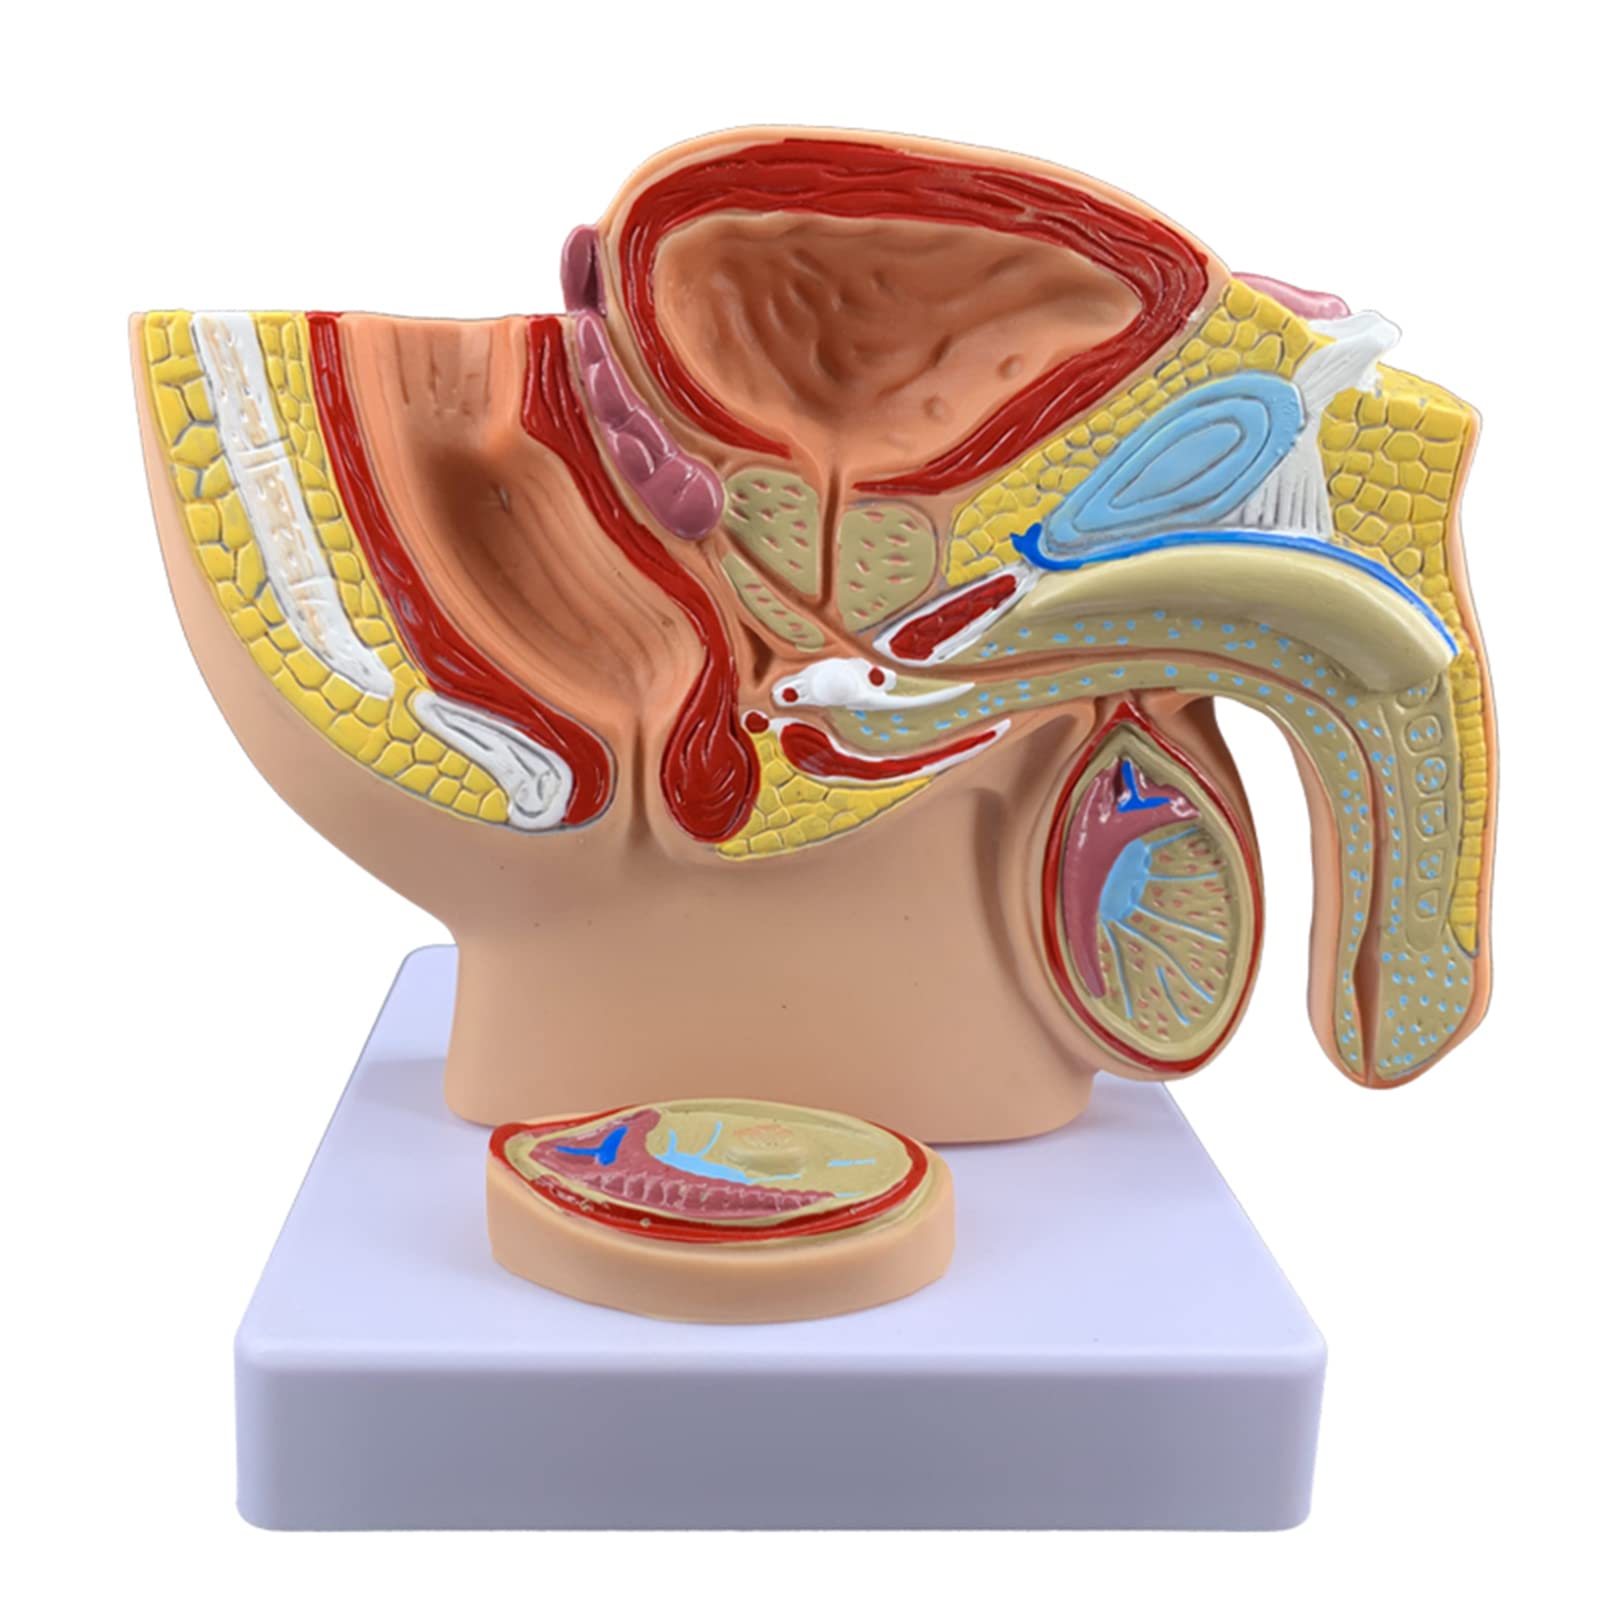 Menschliches männliches Prostata-Becken, reproduktives Harnsystem-Modell, medizinisches Modell, menschliches Harnreproduktionssystem, männliches Anatomie-Becken mit Intimmodell